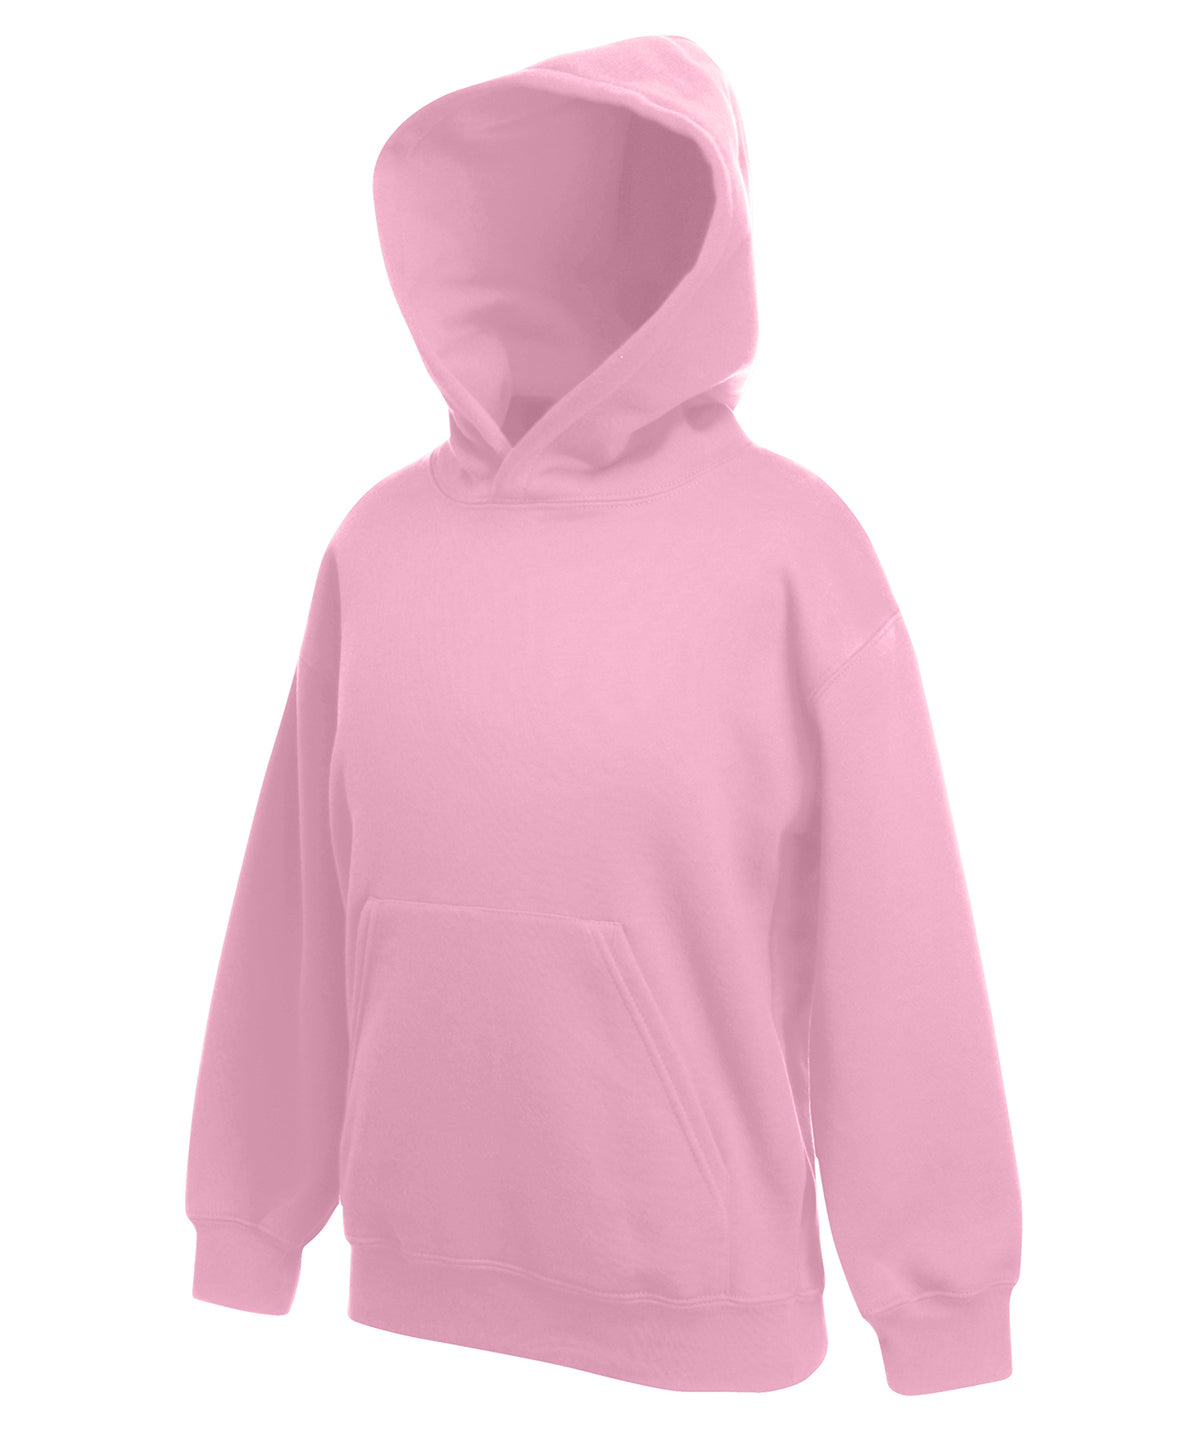 Personalised Hoodies - Black Fruit of the Loom Kids premium hooded sweatshirt